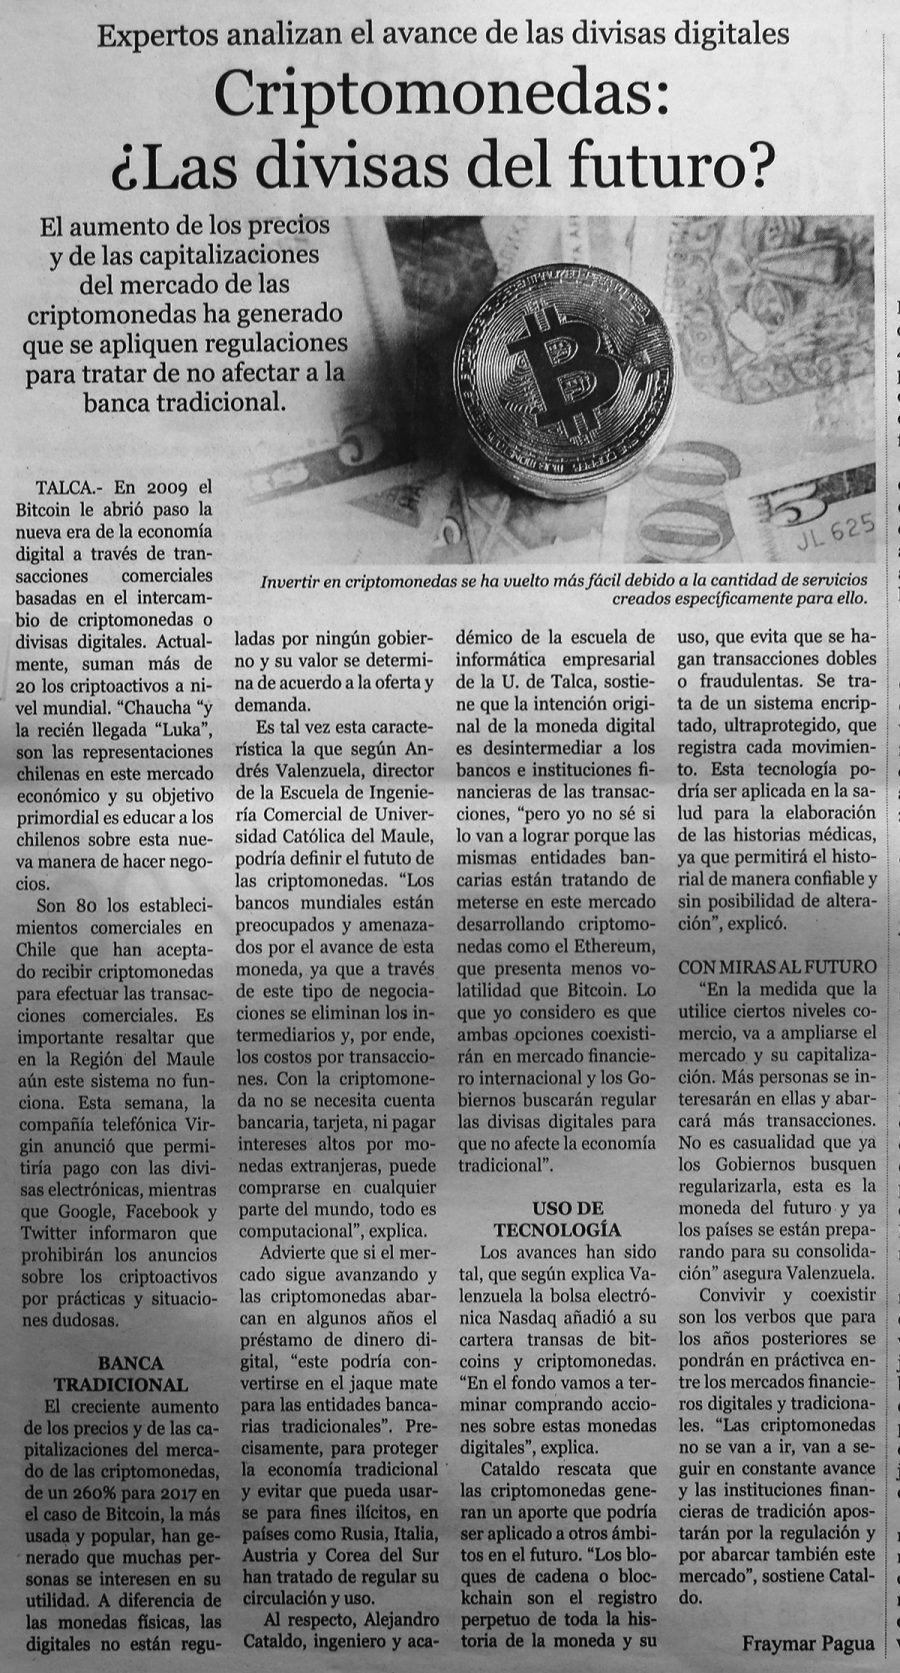 23 de marzo en Diario El Centro: “Criptomonedas: ¿Las divisas del futuro?”